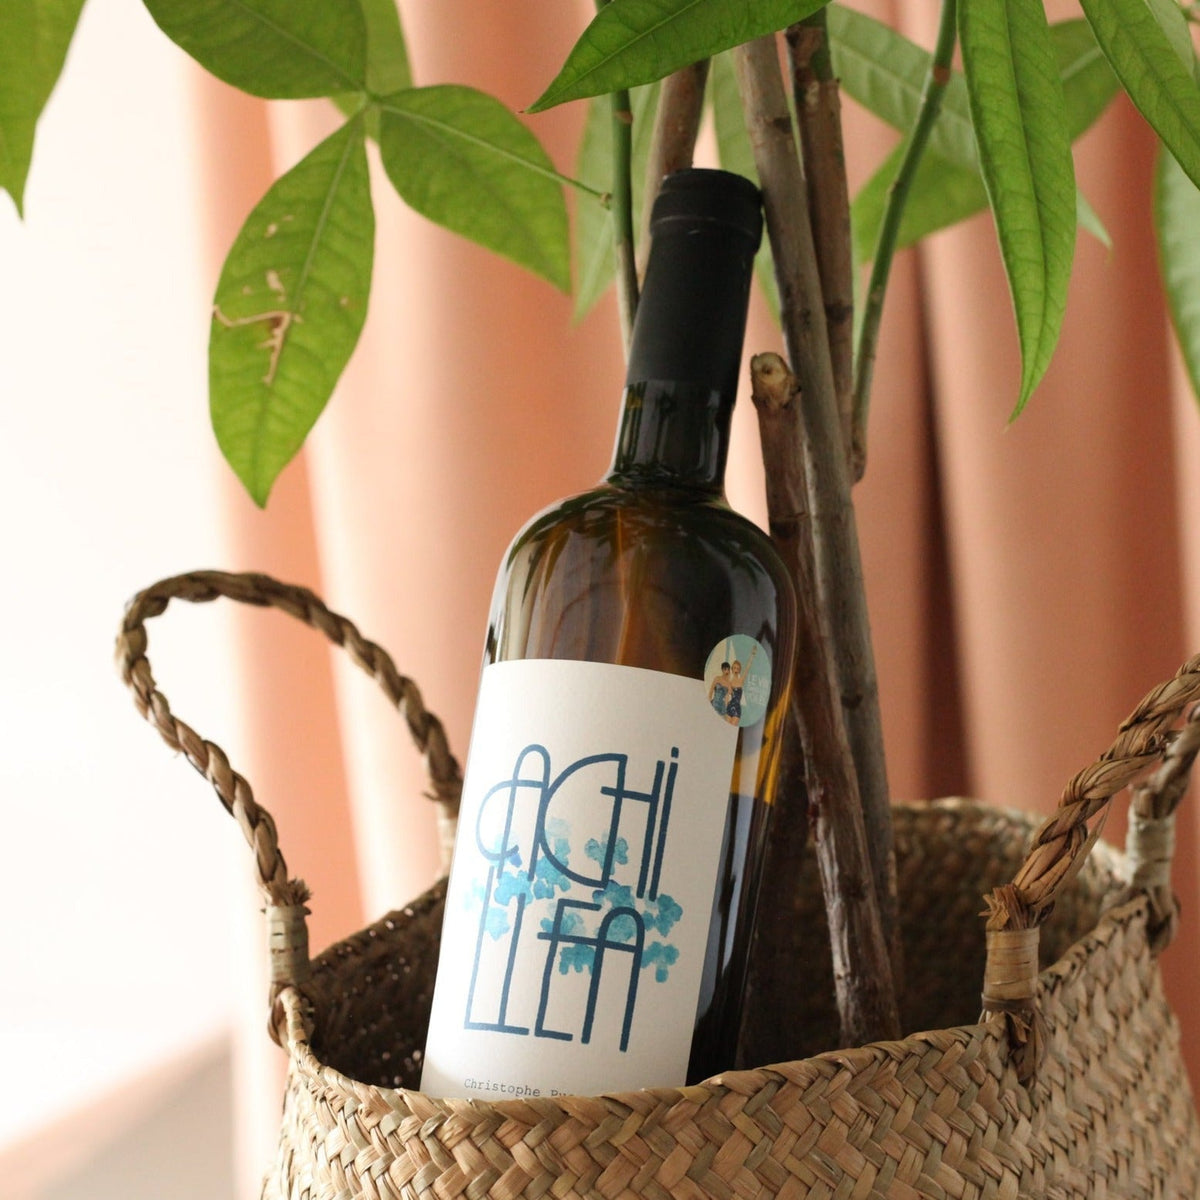 Achillea 2019 - Blanc - Vignobles Pueyo - Le vin dans les voiles